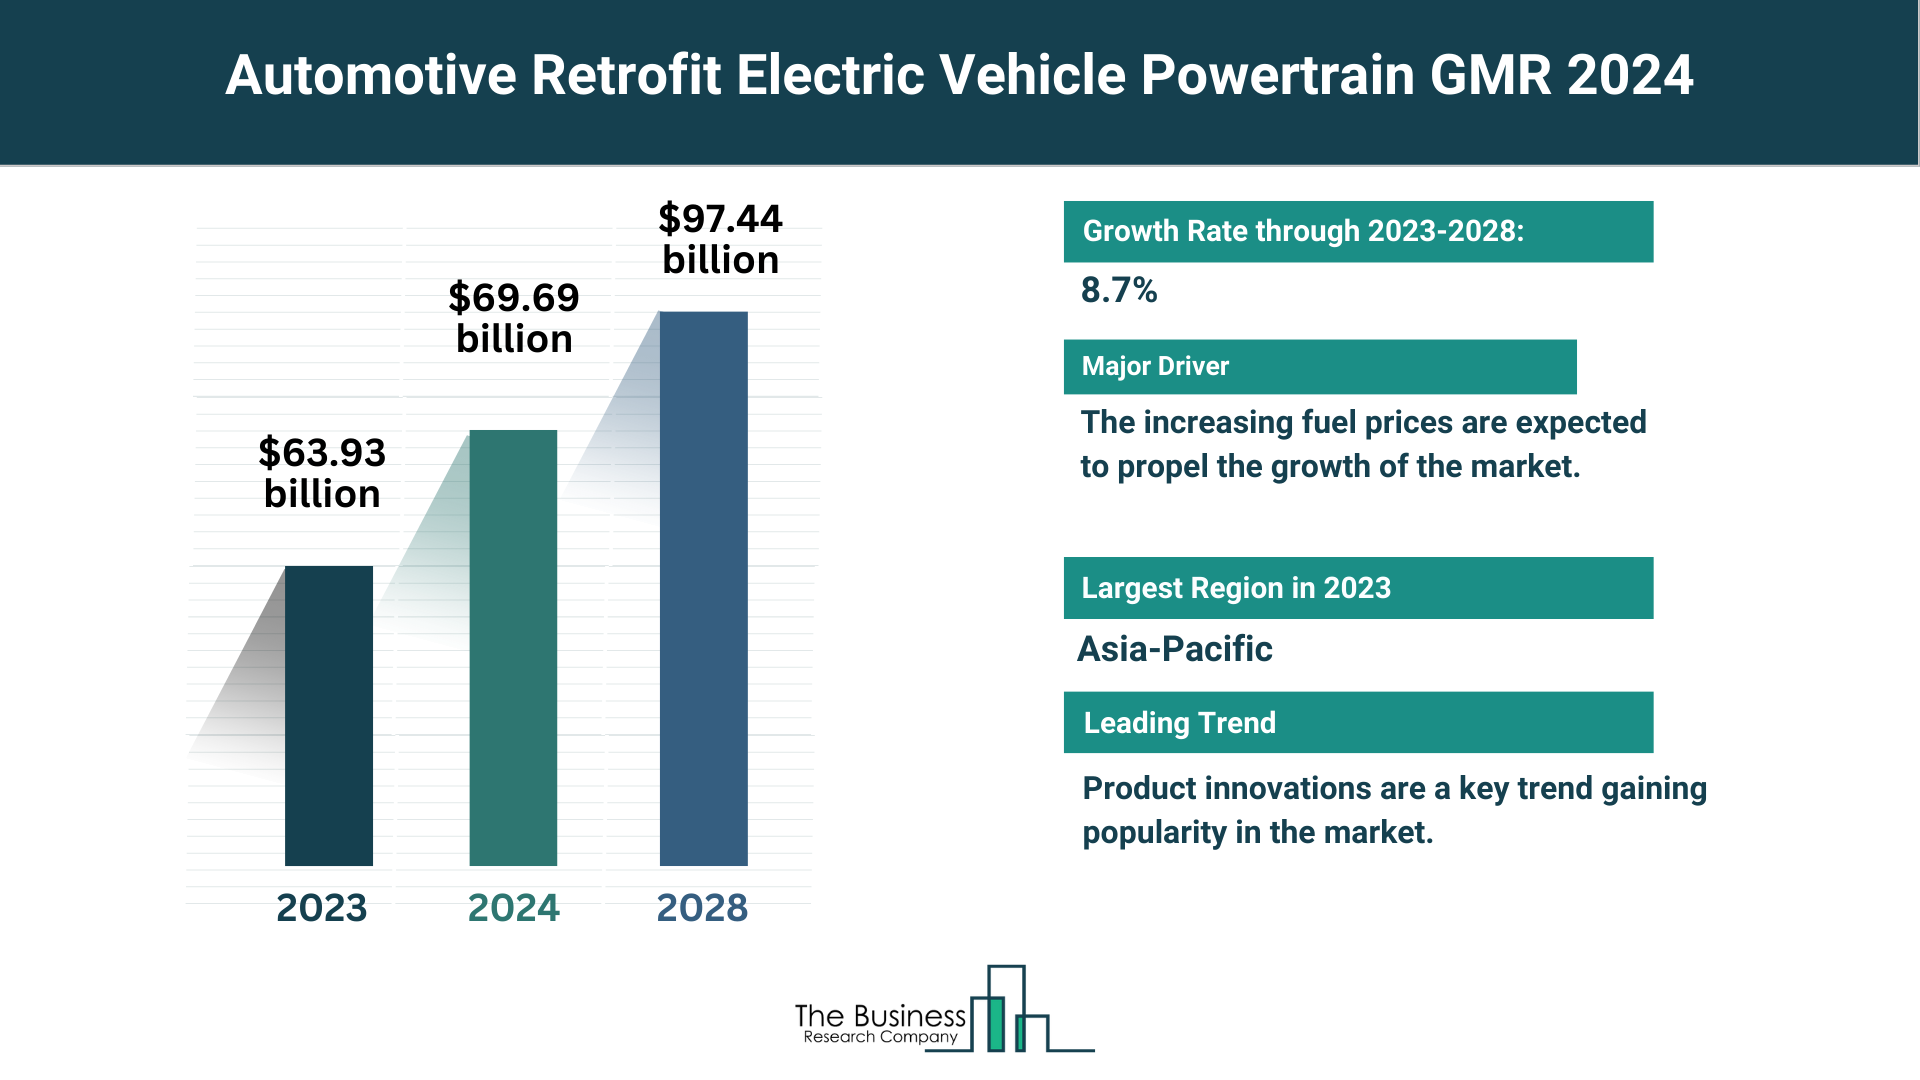 Global Automotive Retrofit Electric Vehicle Powertrain Market